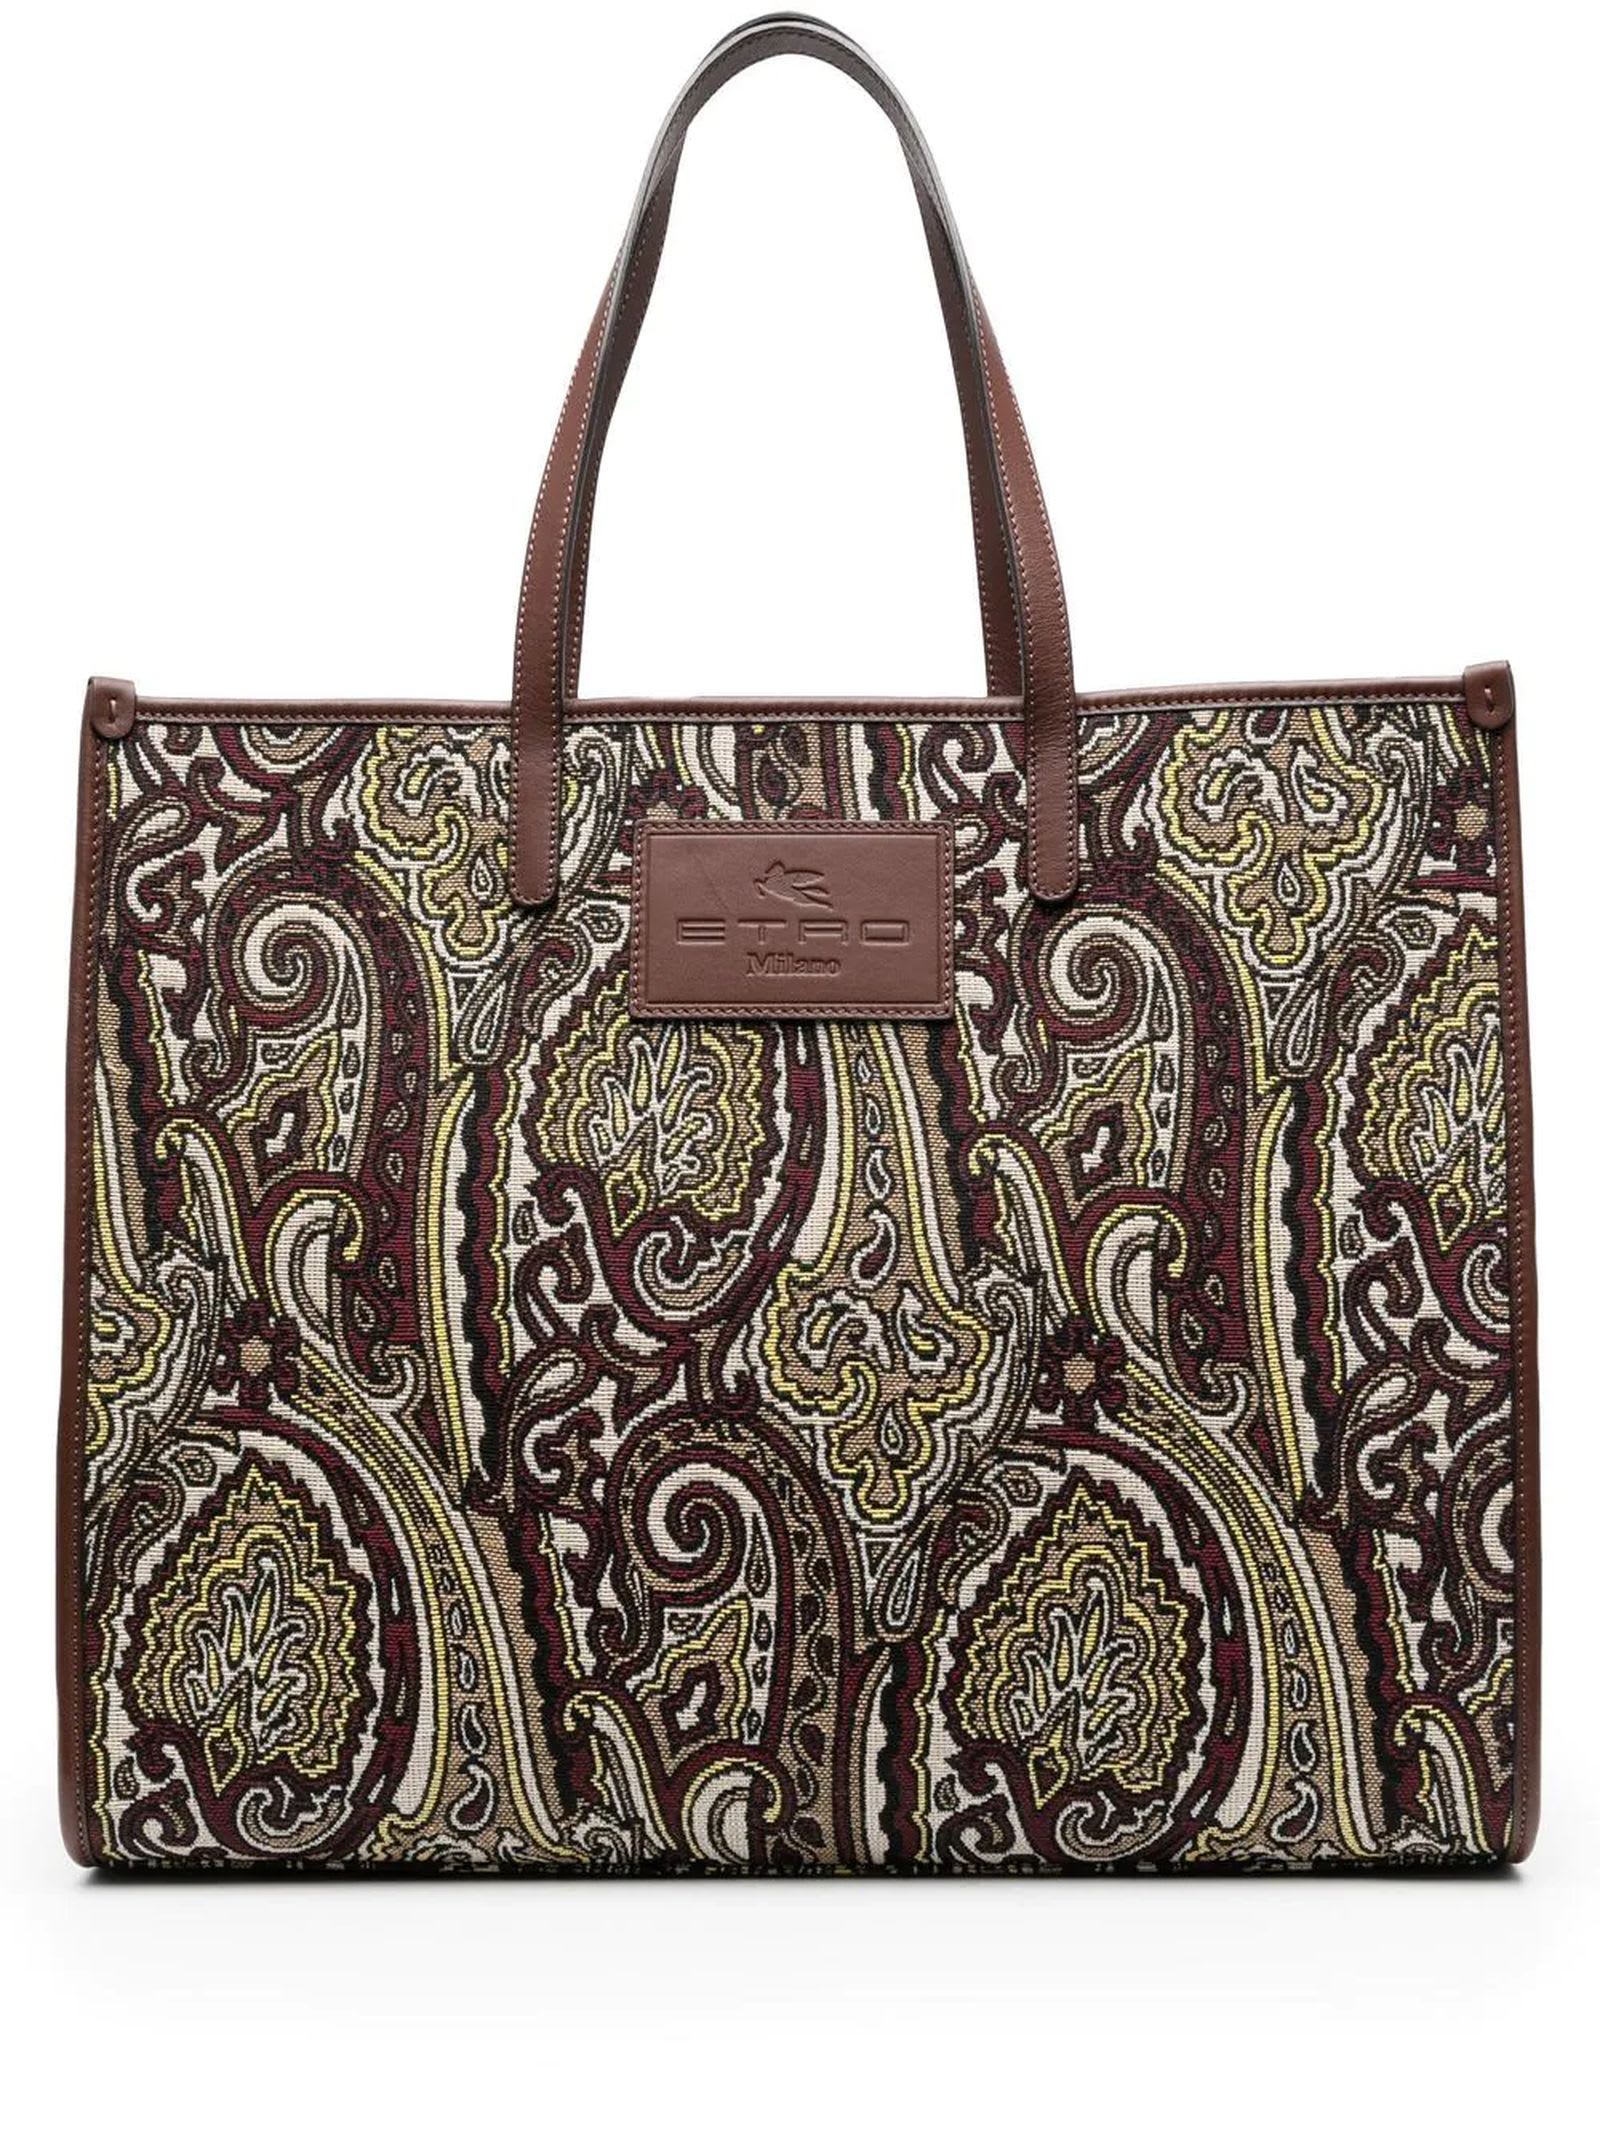 Etro Shopping Bag In Iconic Paisley Jacquard Fabric